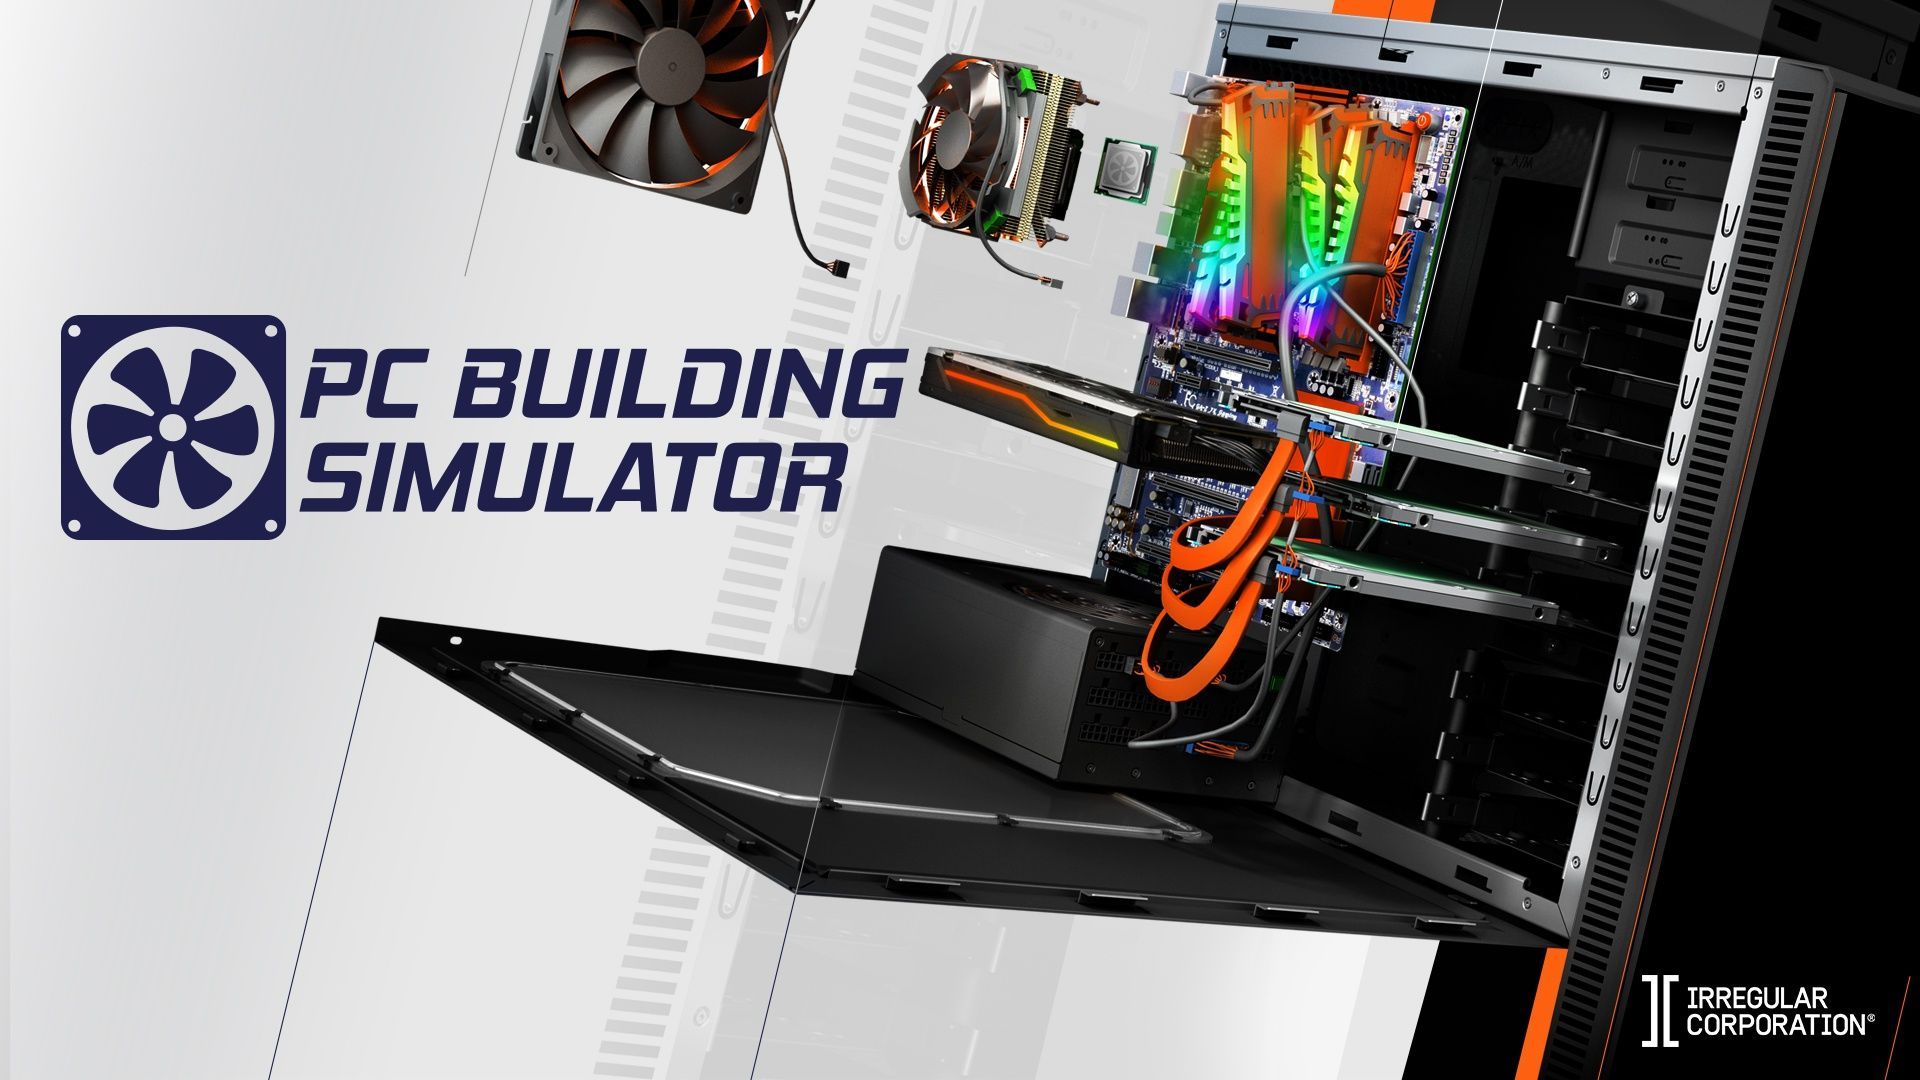 PC Building Simulator đang miễn phí, mời anh em tải về lắp ráp những cấu hình đỉnh cao